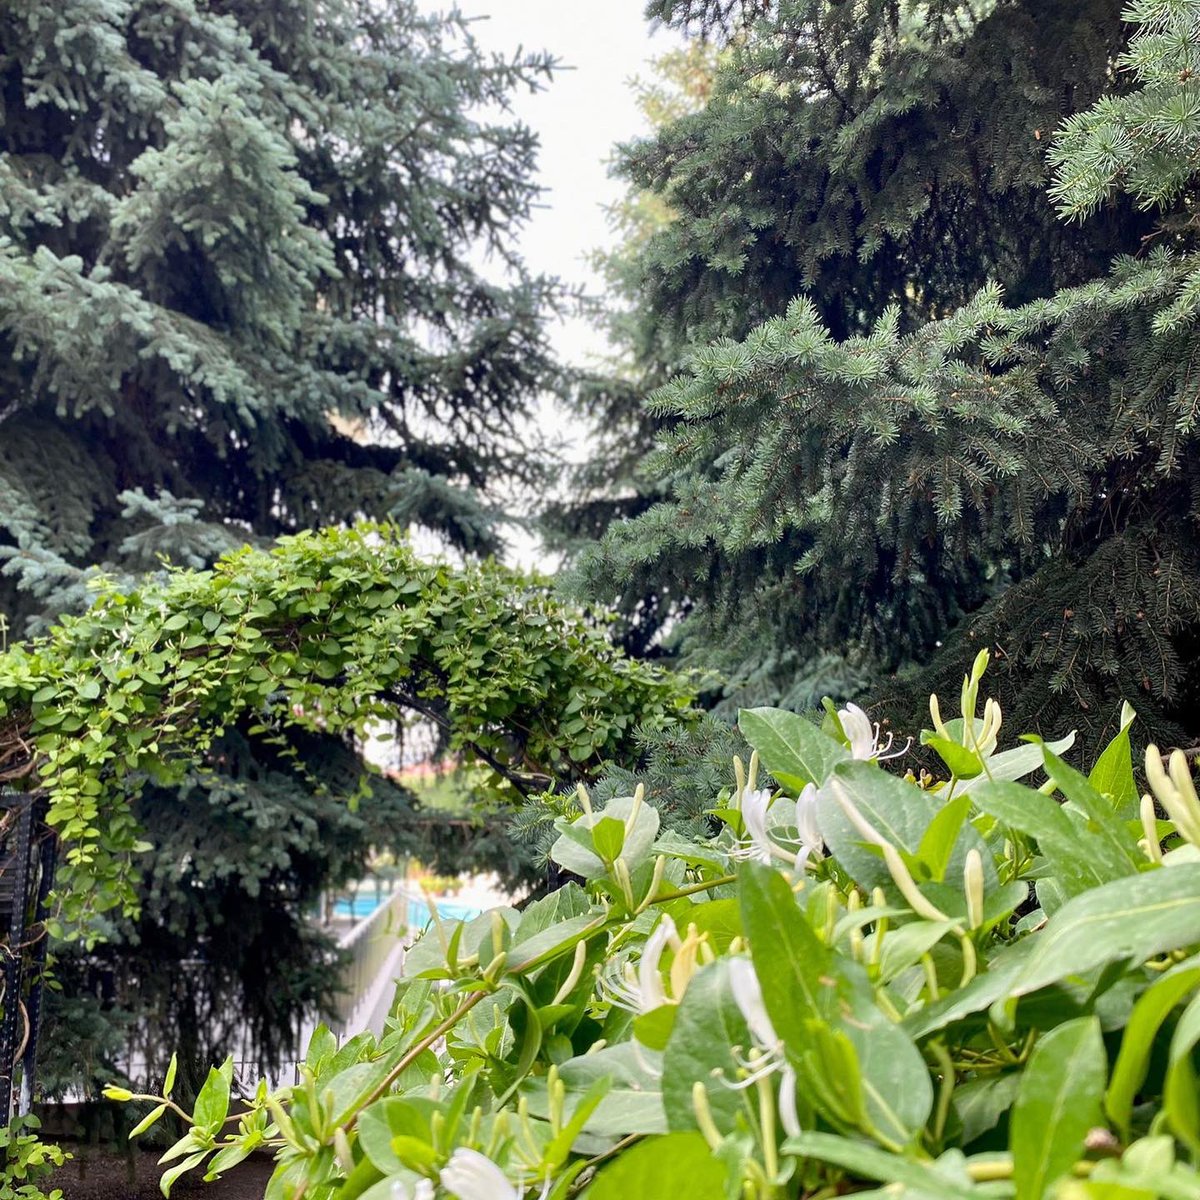 #ikbalthermal bahçesinde huzur dolu bir gün. ☺️
A peaceful day in our garden @ikbalthermal ☺
.
@ikbalthermal
.
#huzurdolubirgündileriz #haveapeacefulday #huzur #peace #dinginlik #serenity #yeşil #green #doğa #nature #oksijen #oxygen #temizhava #ikbal #ikbalthermal #afyon